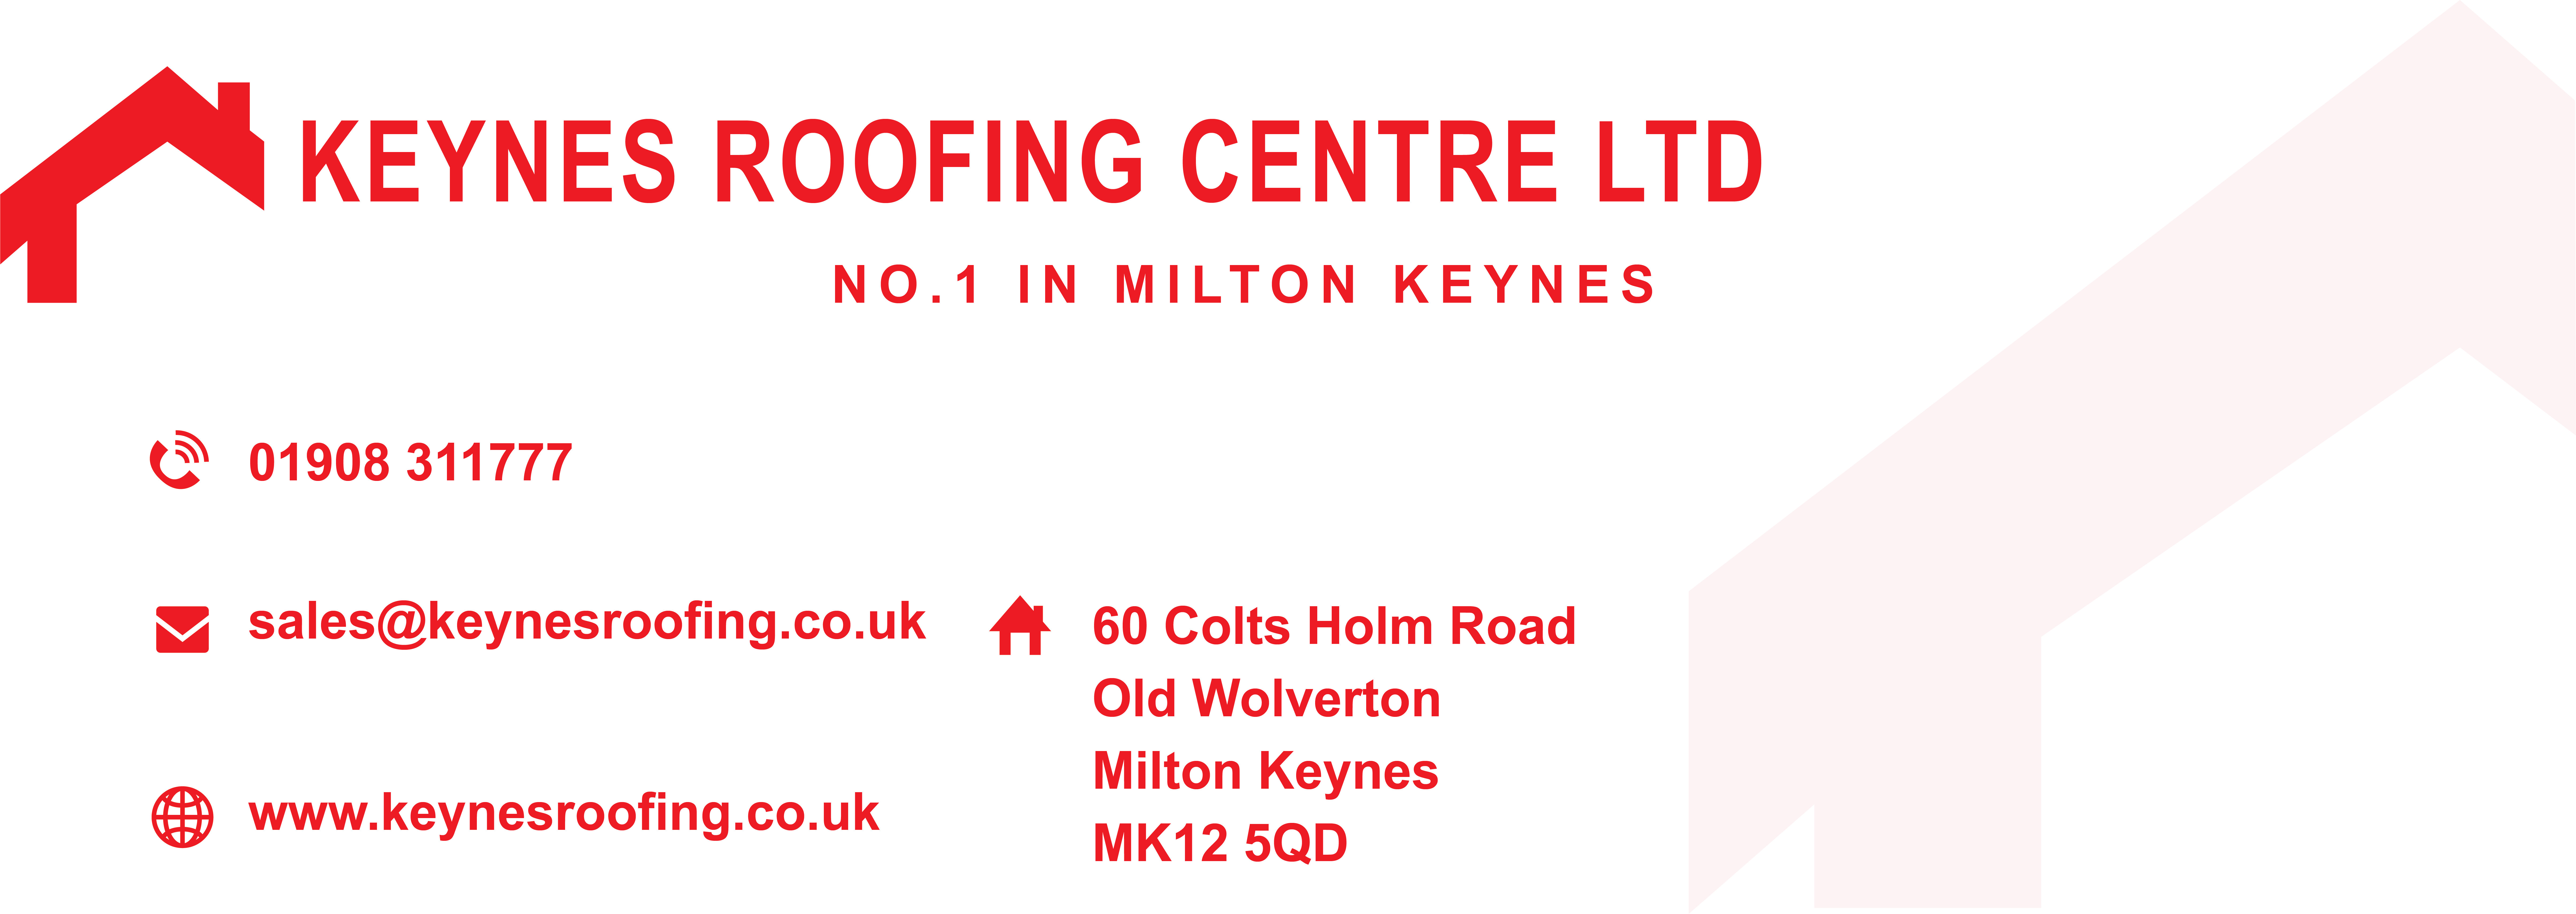 Keynes Roofing Centre Ltd